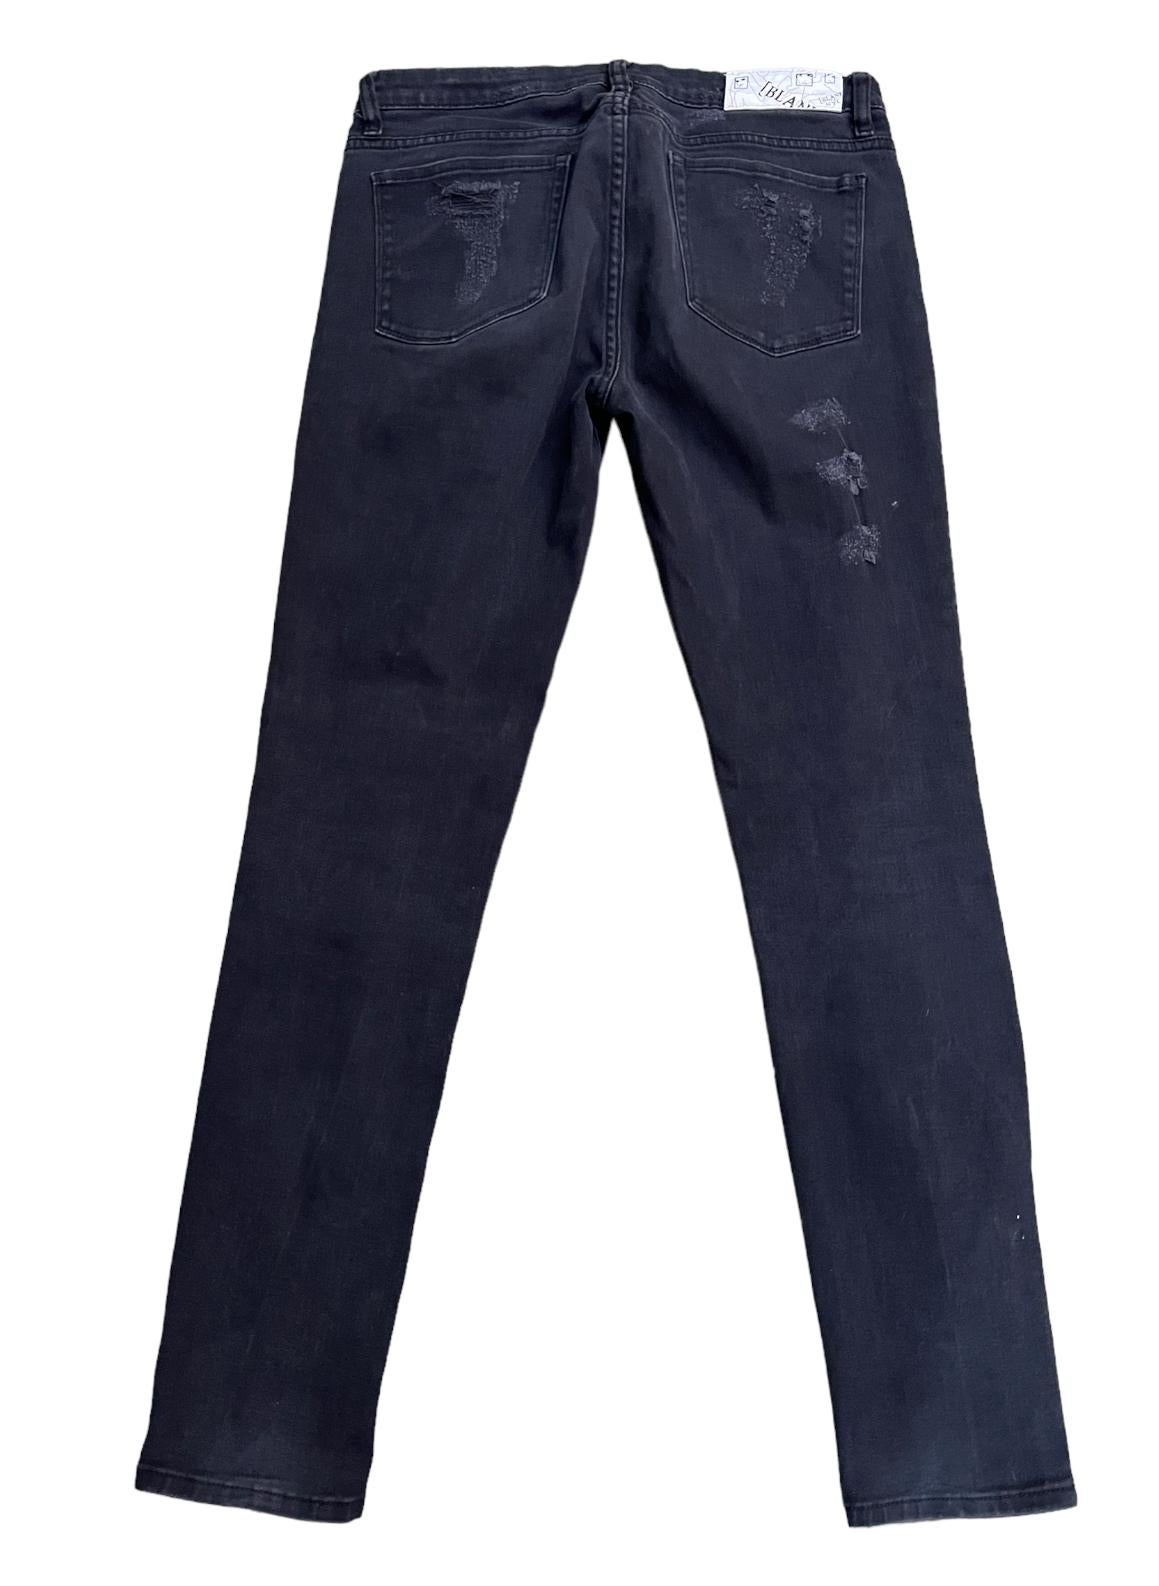 Blanki Black Denim Jeans, Size 31 For Sale 5